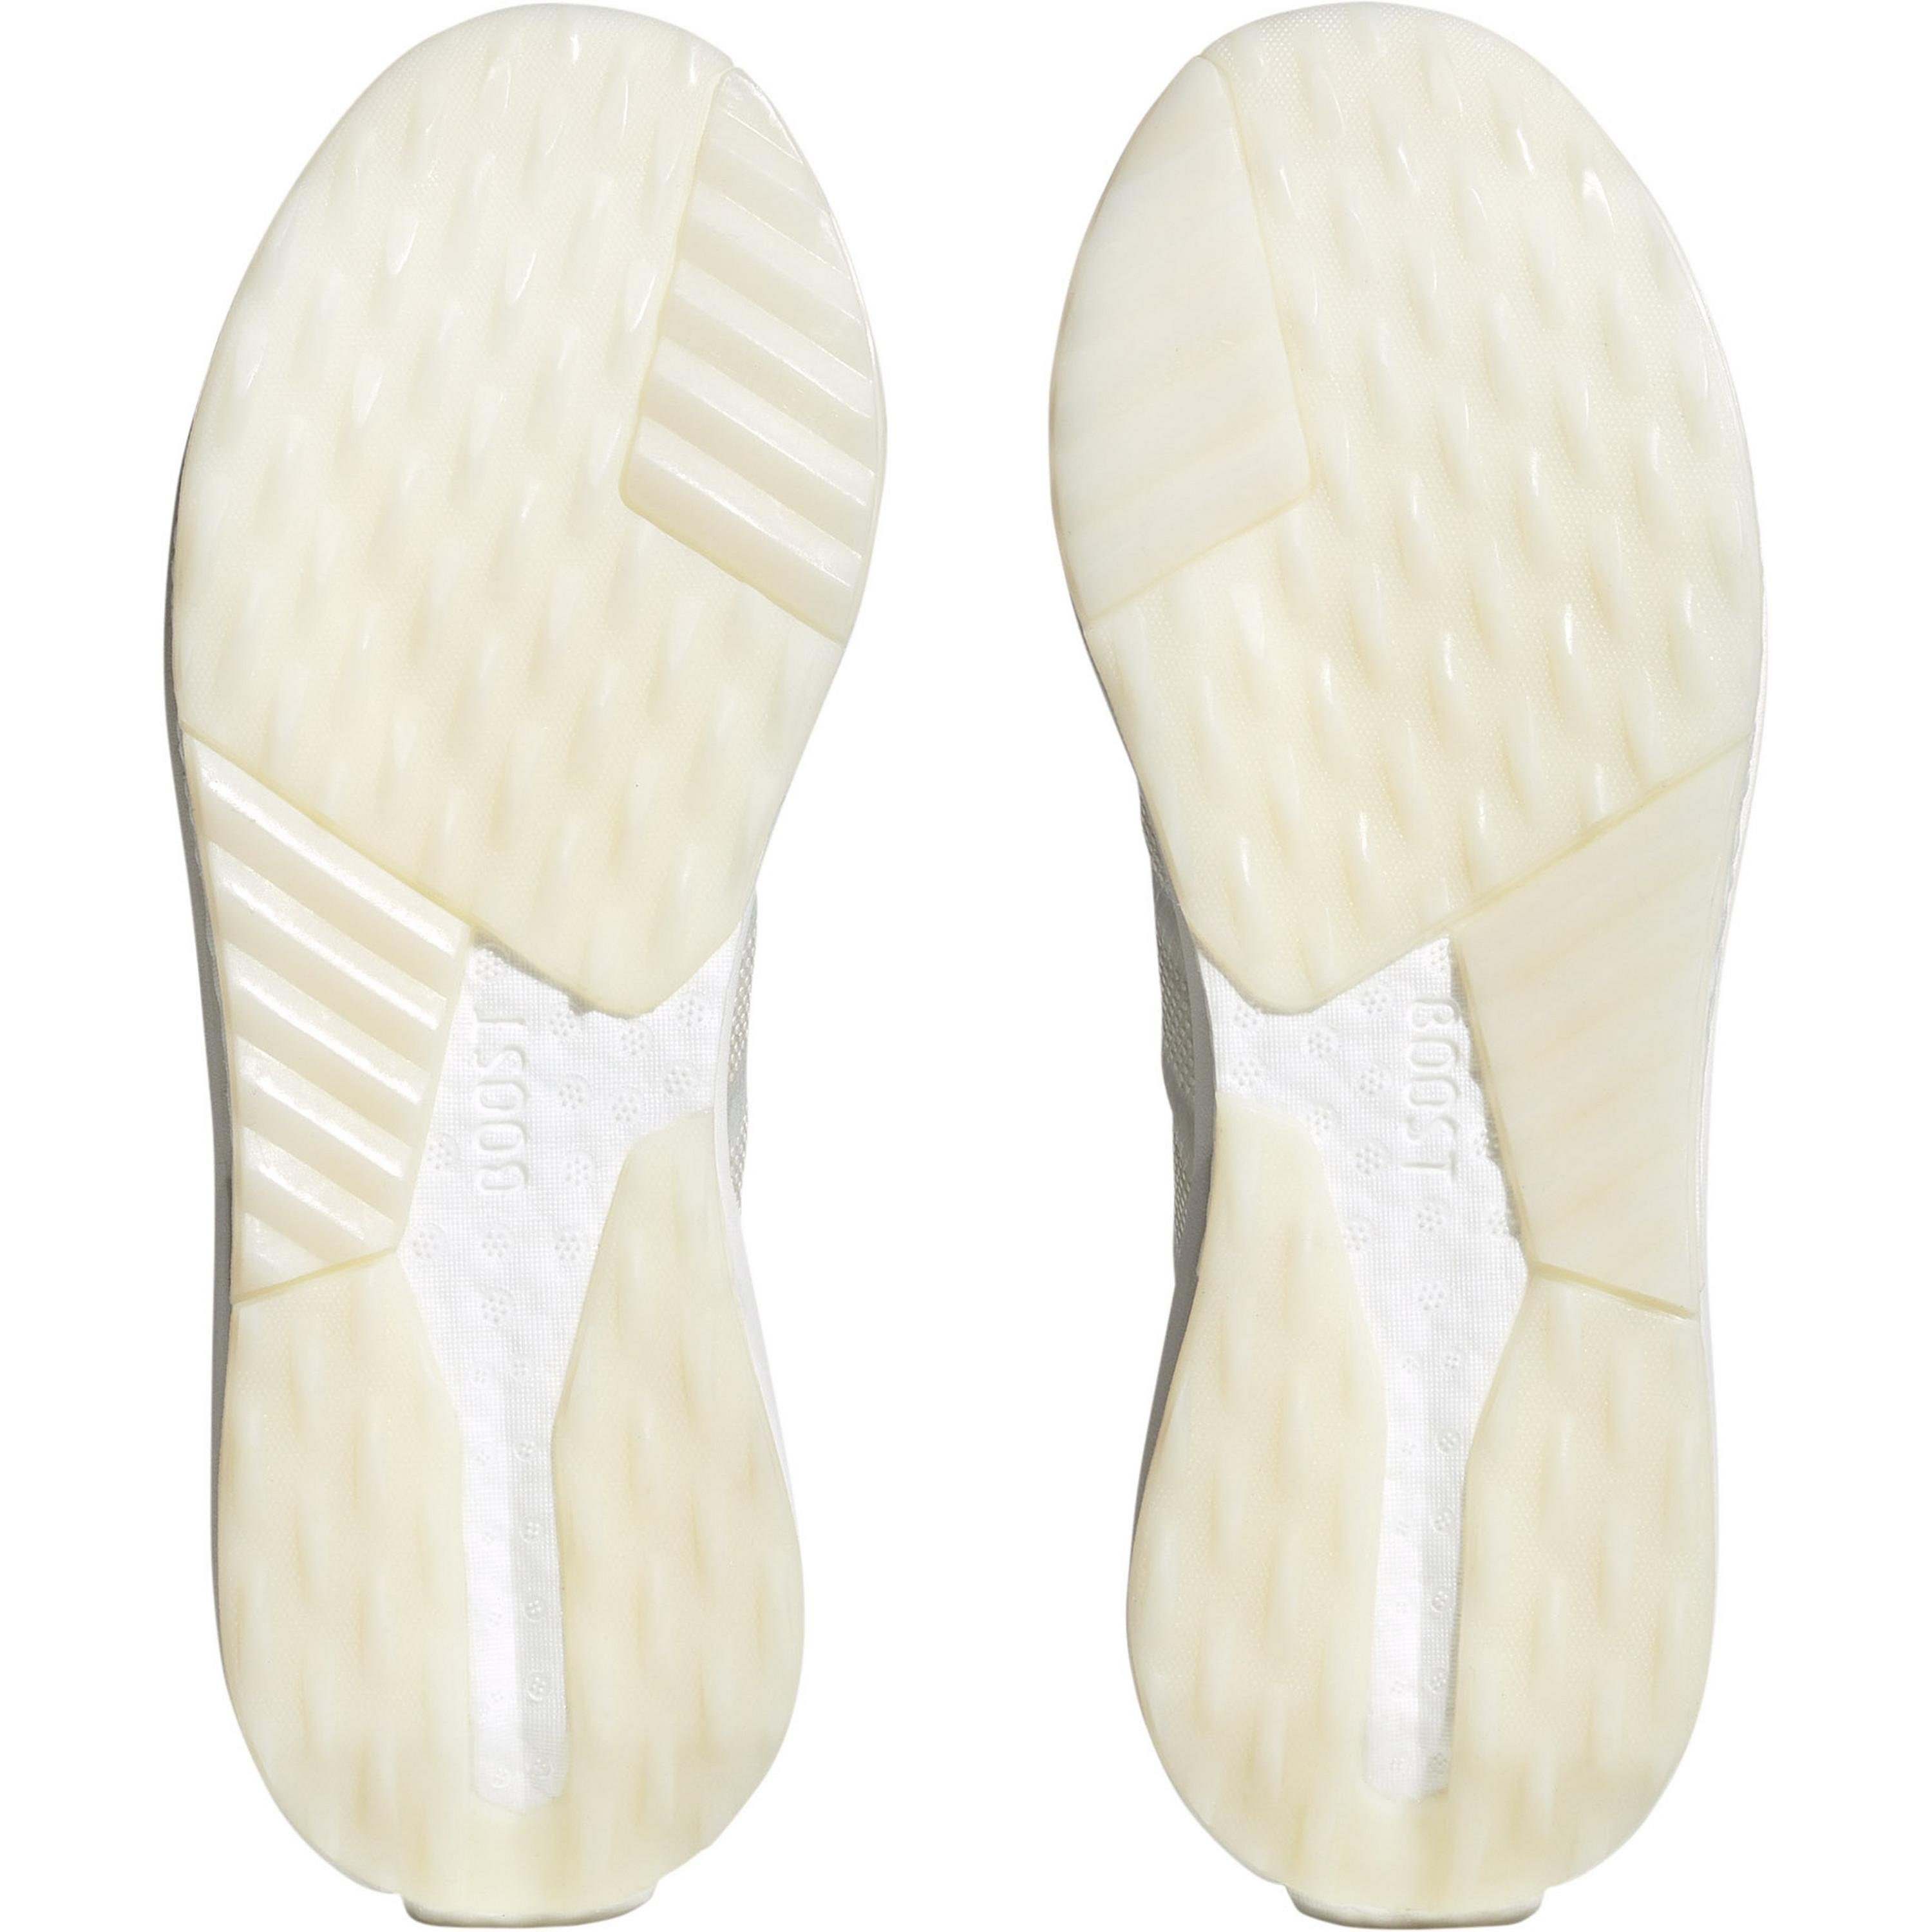 Avryn white met.-crystal Sneaker adidas ftwr Sportswear white-zero